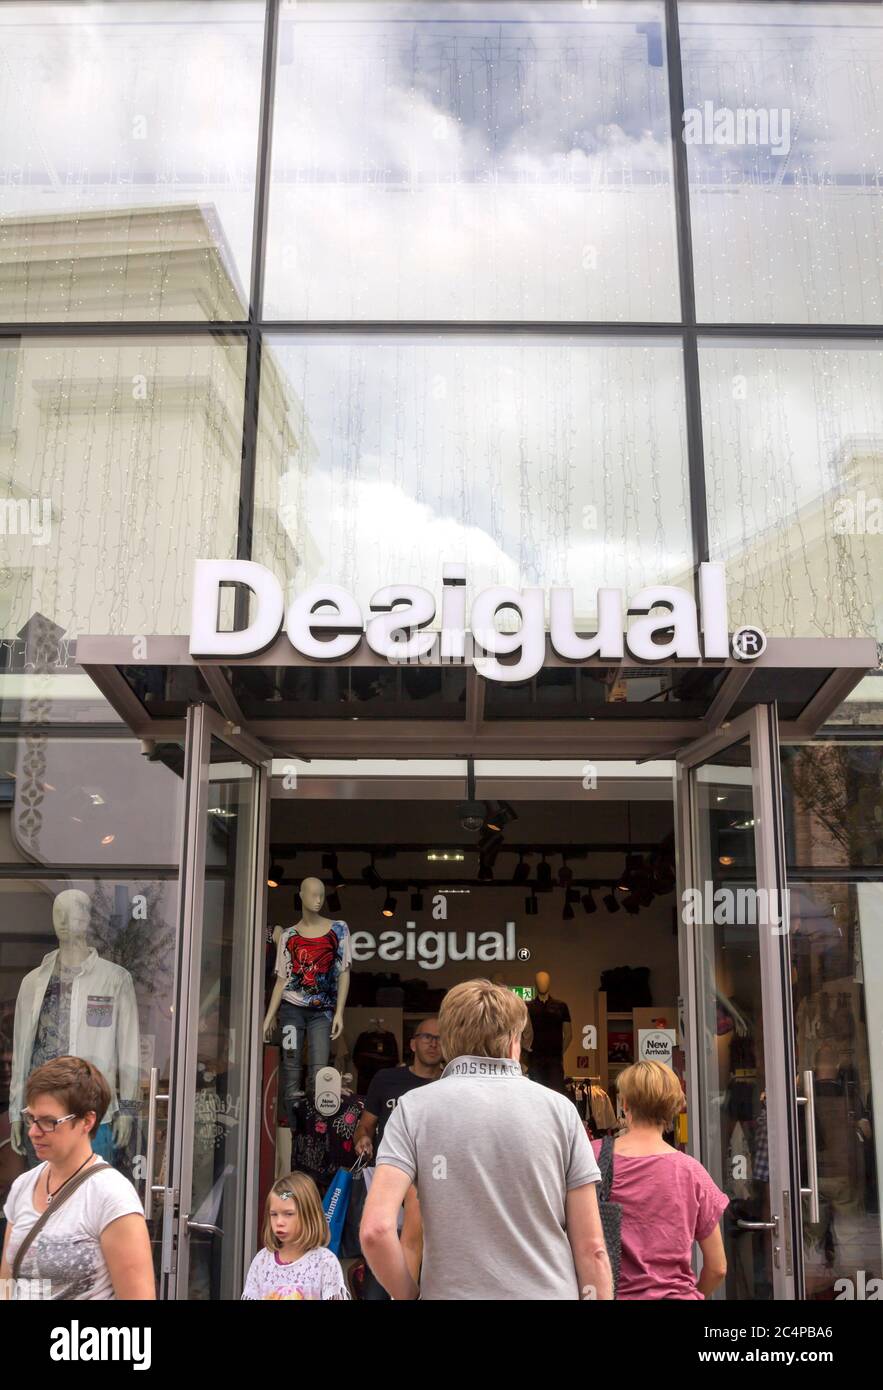 Ingolstdat, Deutschland : Desigual Schaufenster. Desigual ist ein  Hersteller von Bekleidung und Schuhen mit Sitz in Barcelona Stockfotografie  - Alamy